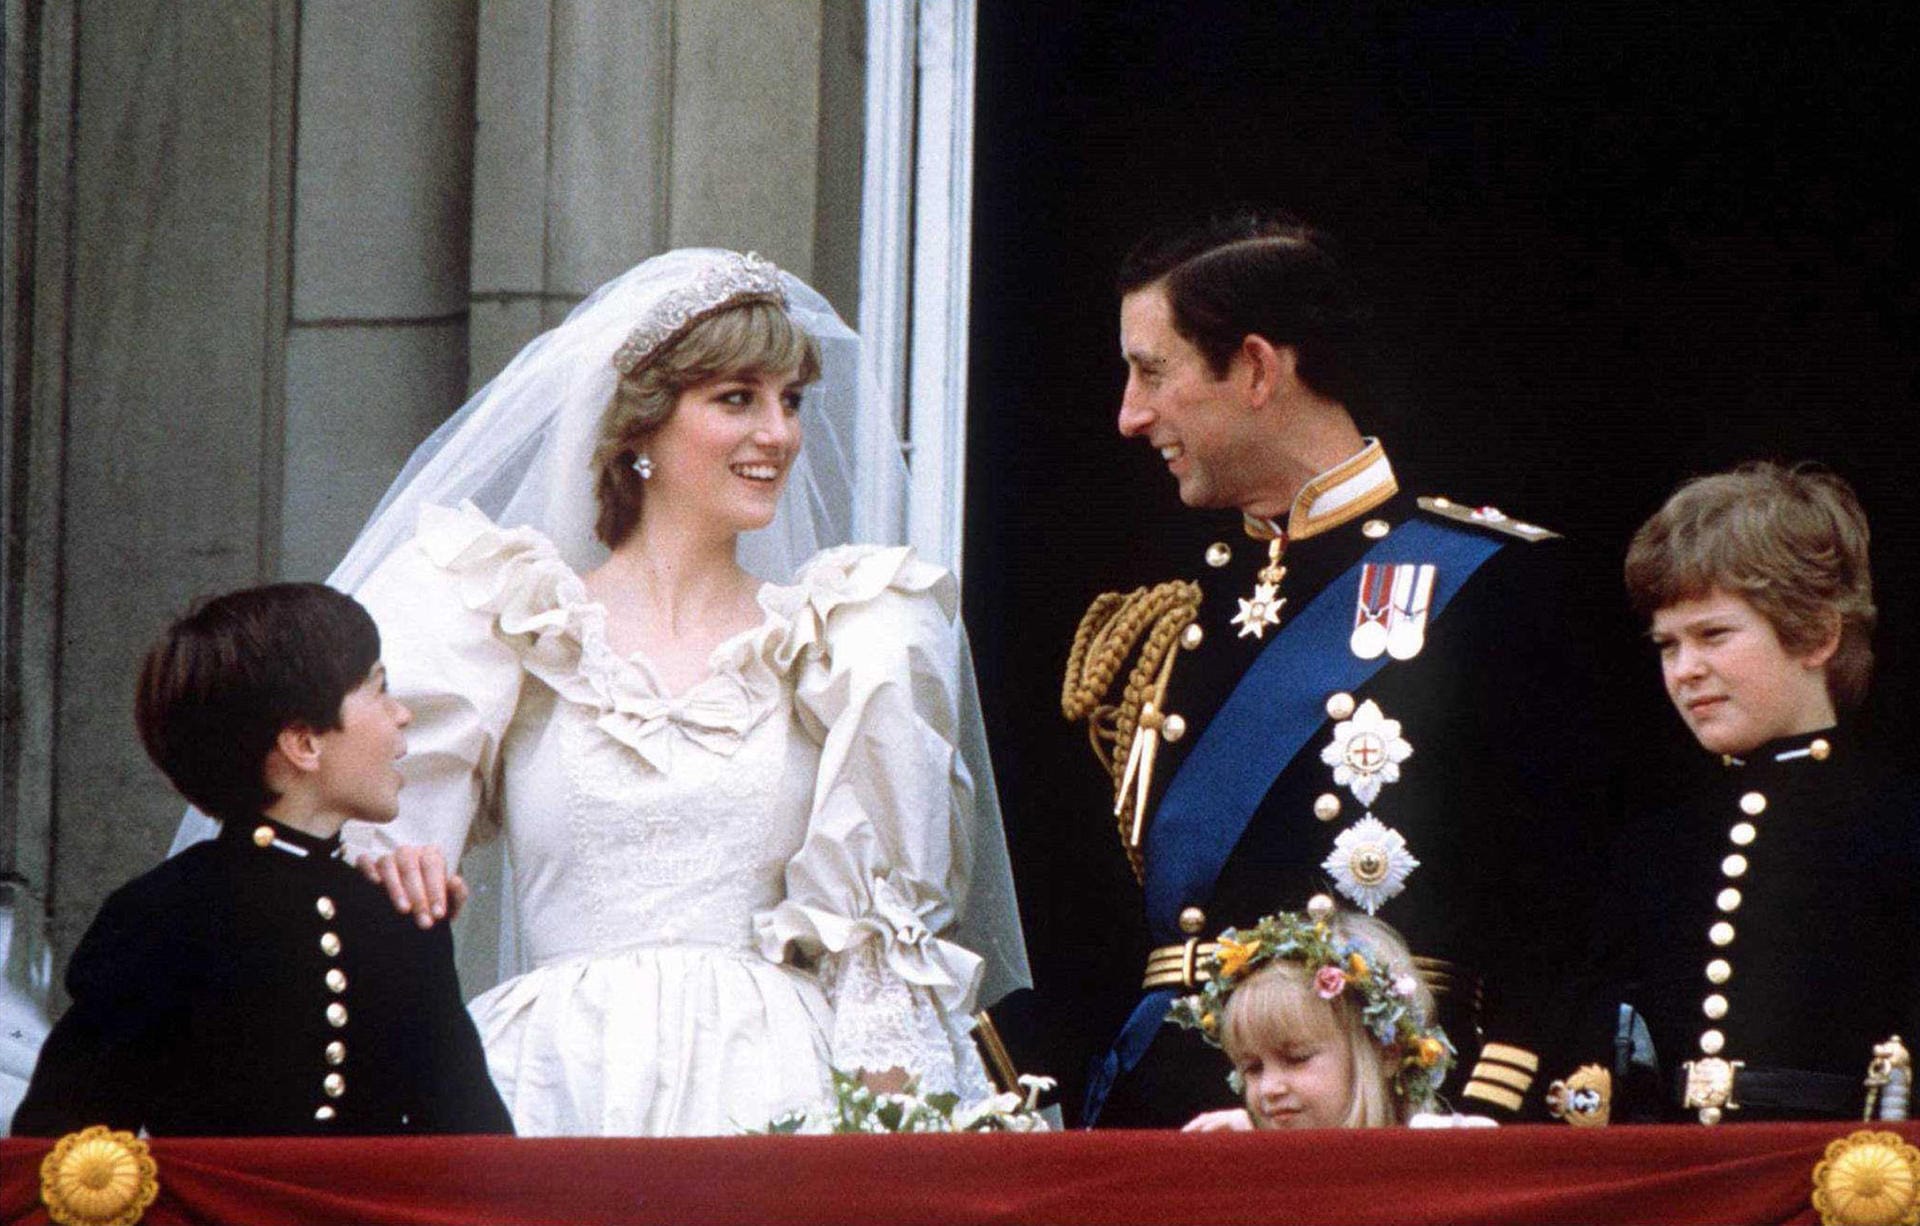 Die Trauung zwischen Prinz Charles und Diana Spencer im Juli 1981 galt vielen als Traumhochzeit schlechthin. Wer konnte damals schon ahnen, dass die Ehe 1996 wieder geschieden werden würde?